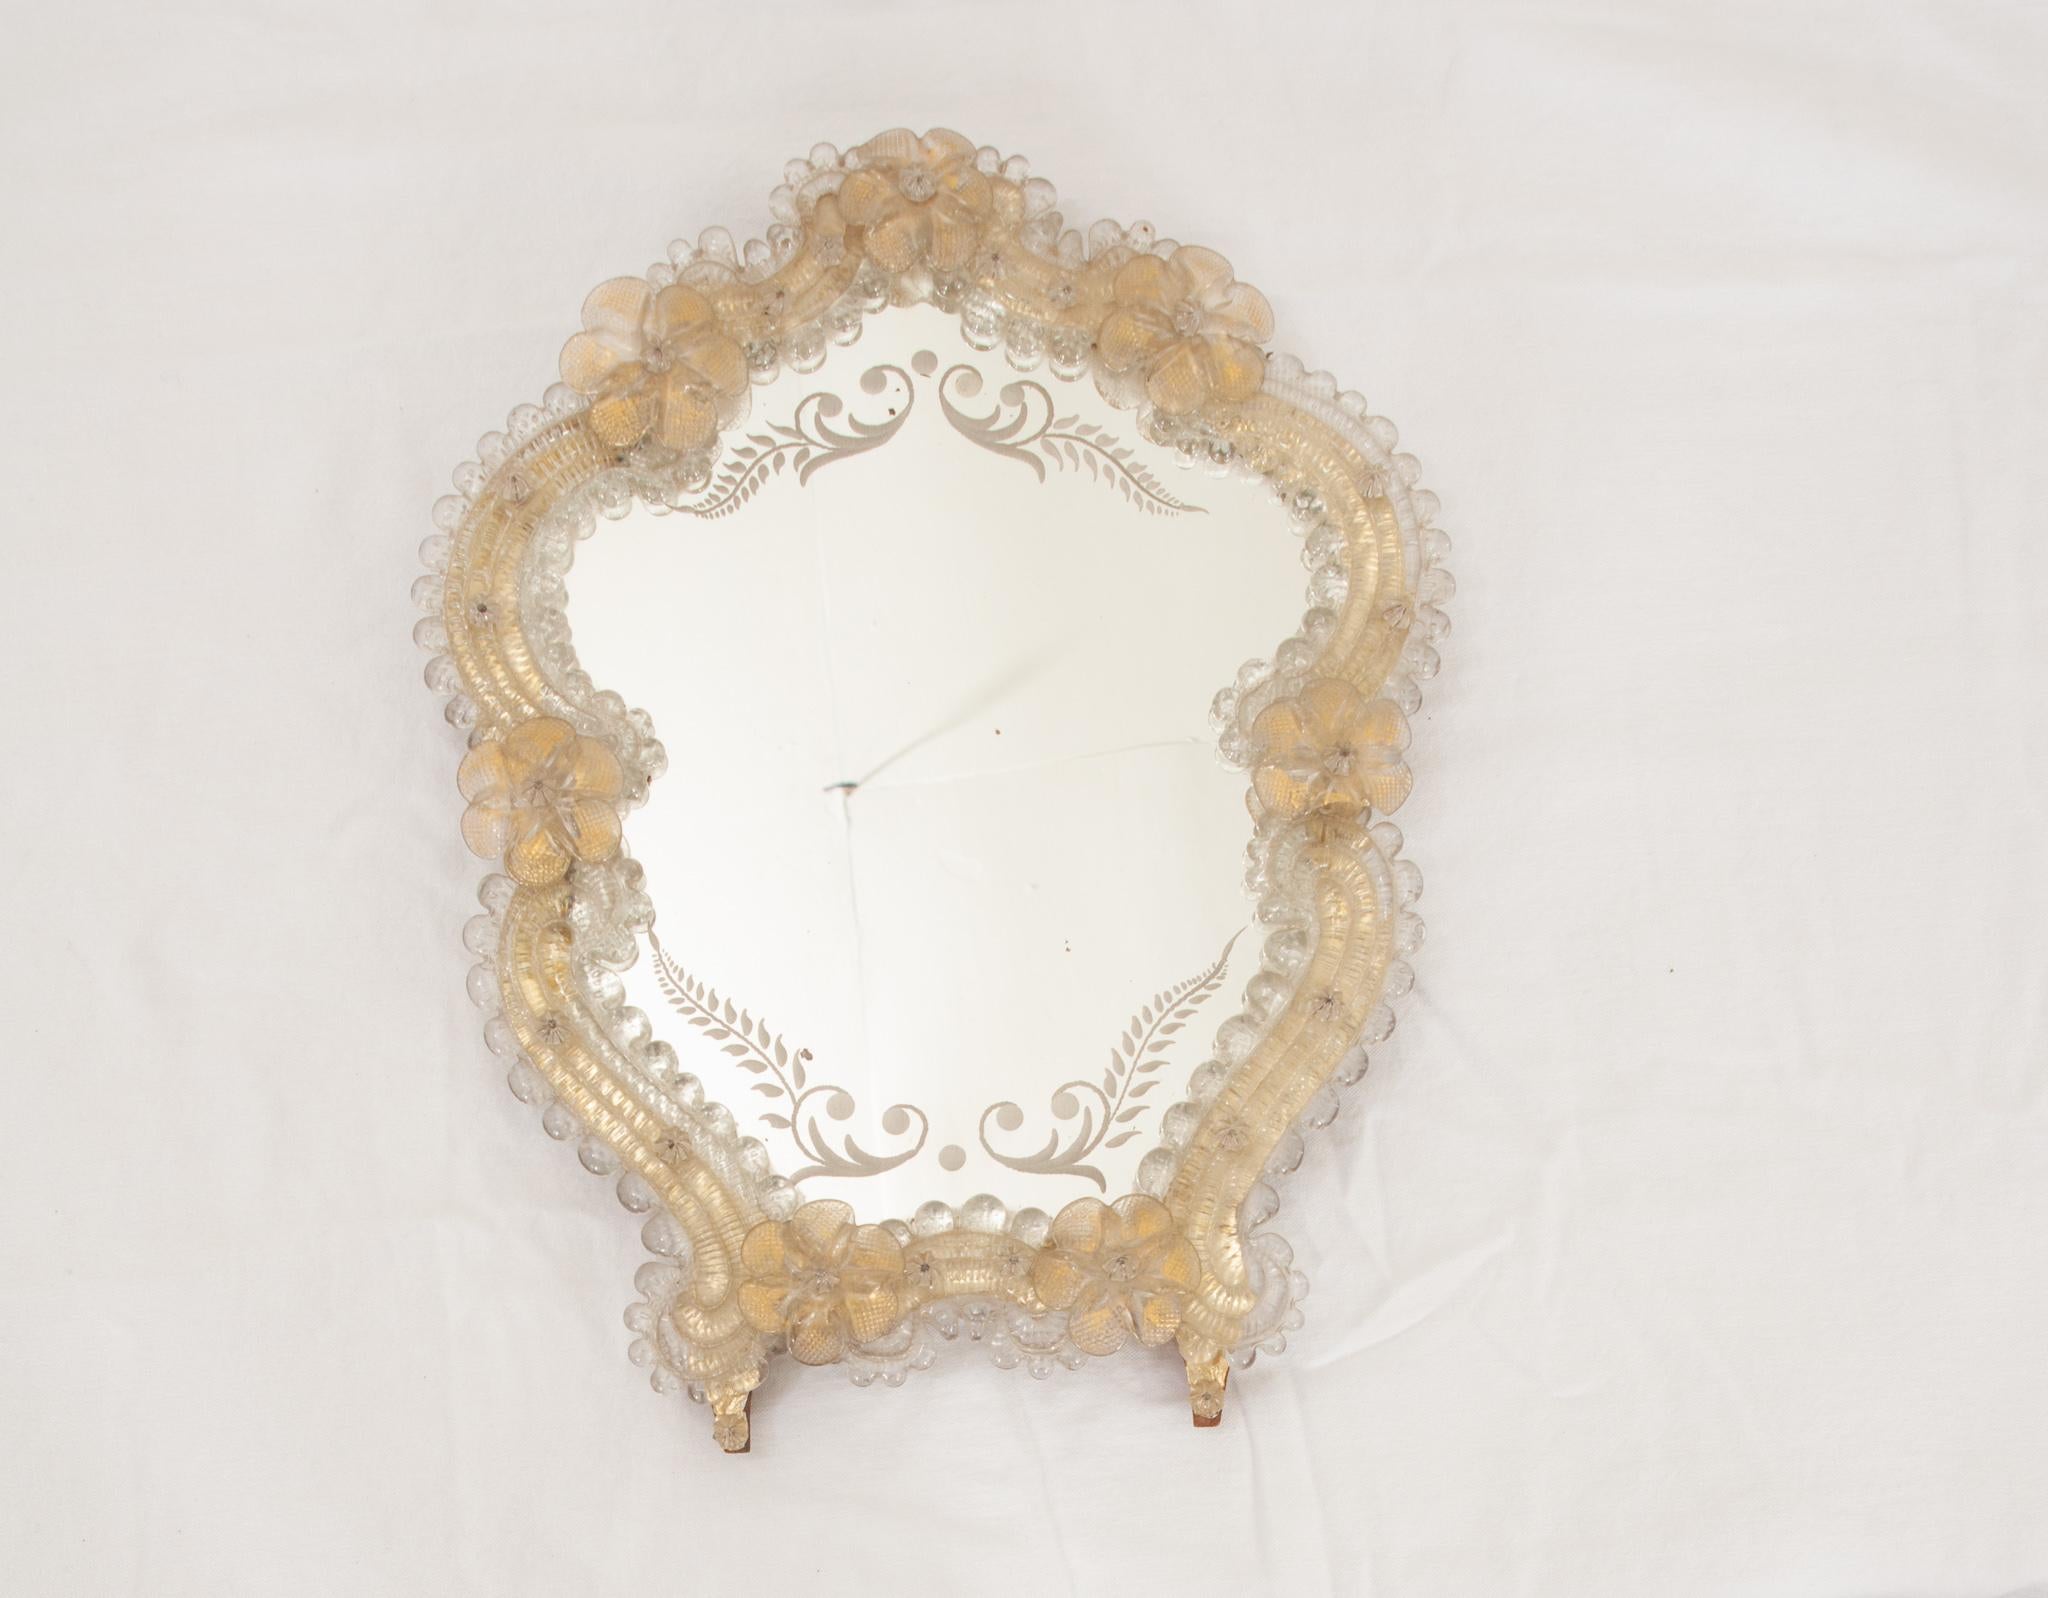 Ce petit miroir est un ajout fabuleux à tout espace. La plaque de miroir antique présente de magnifiques gravures inspirées de la fougère sur le dessus et le dessous. Les fleurs en verre dont le dessous est saupoudré d'or doré donnent un aspect